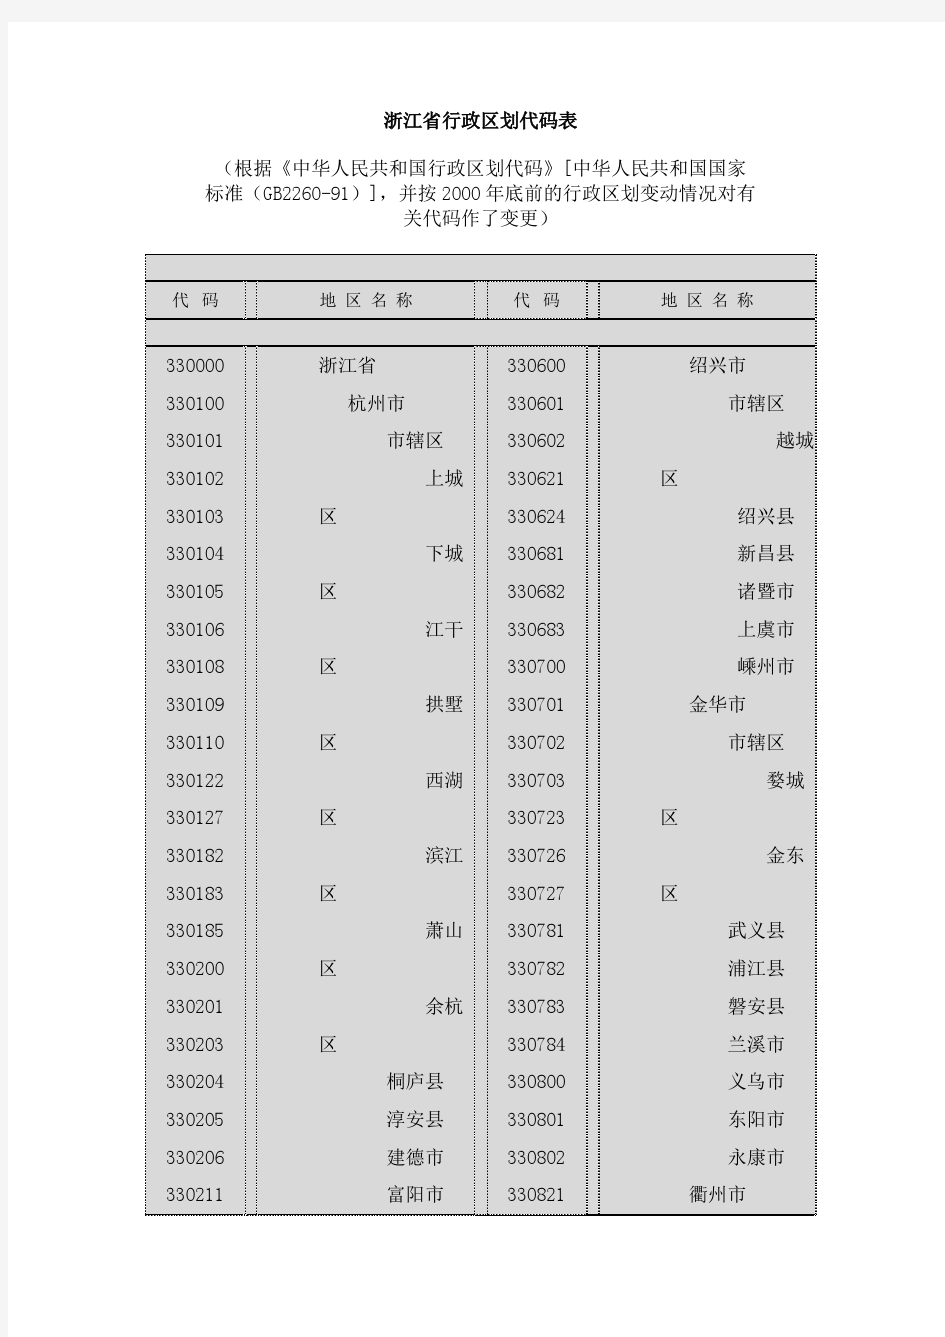 浙江省行政区划代码表